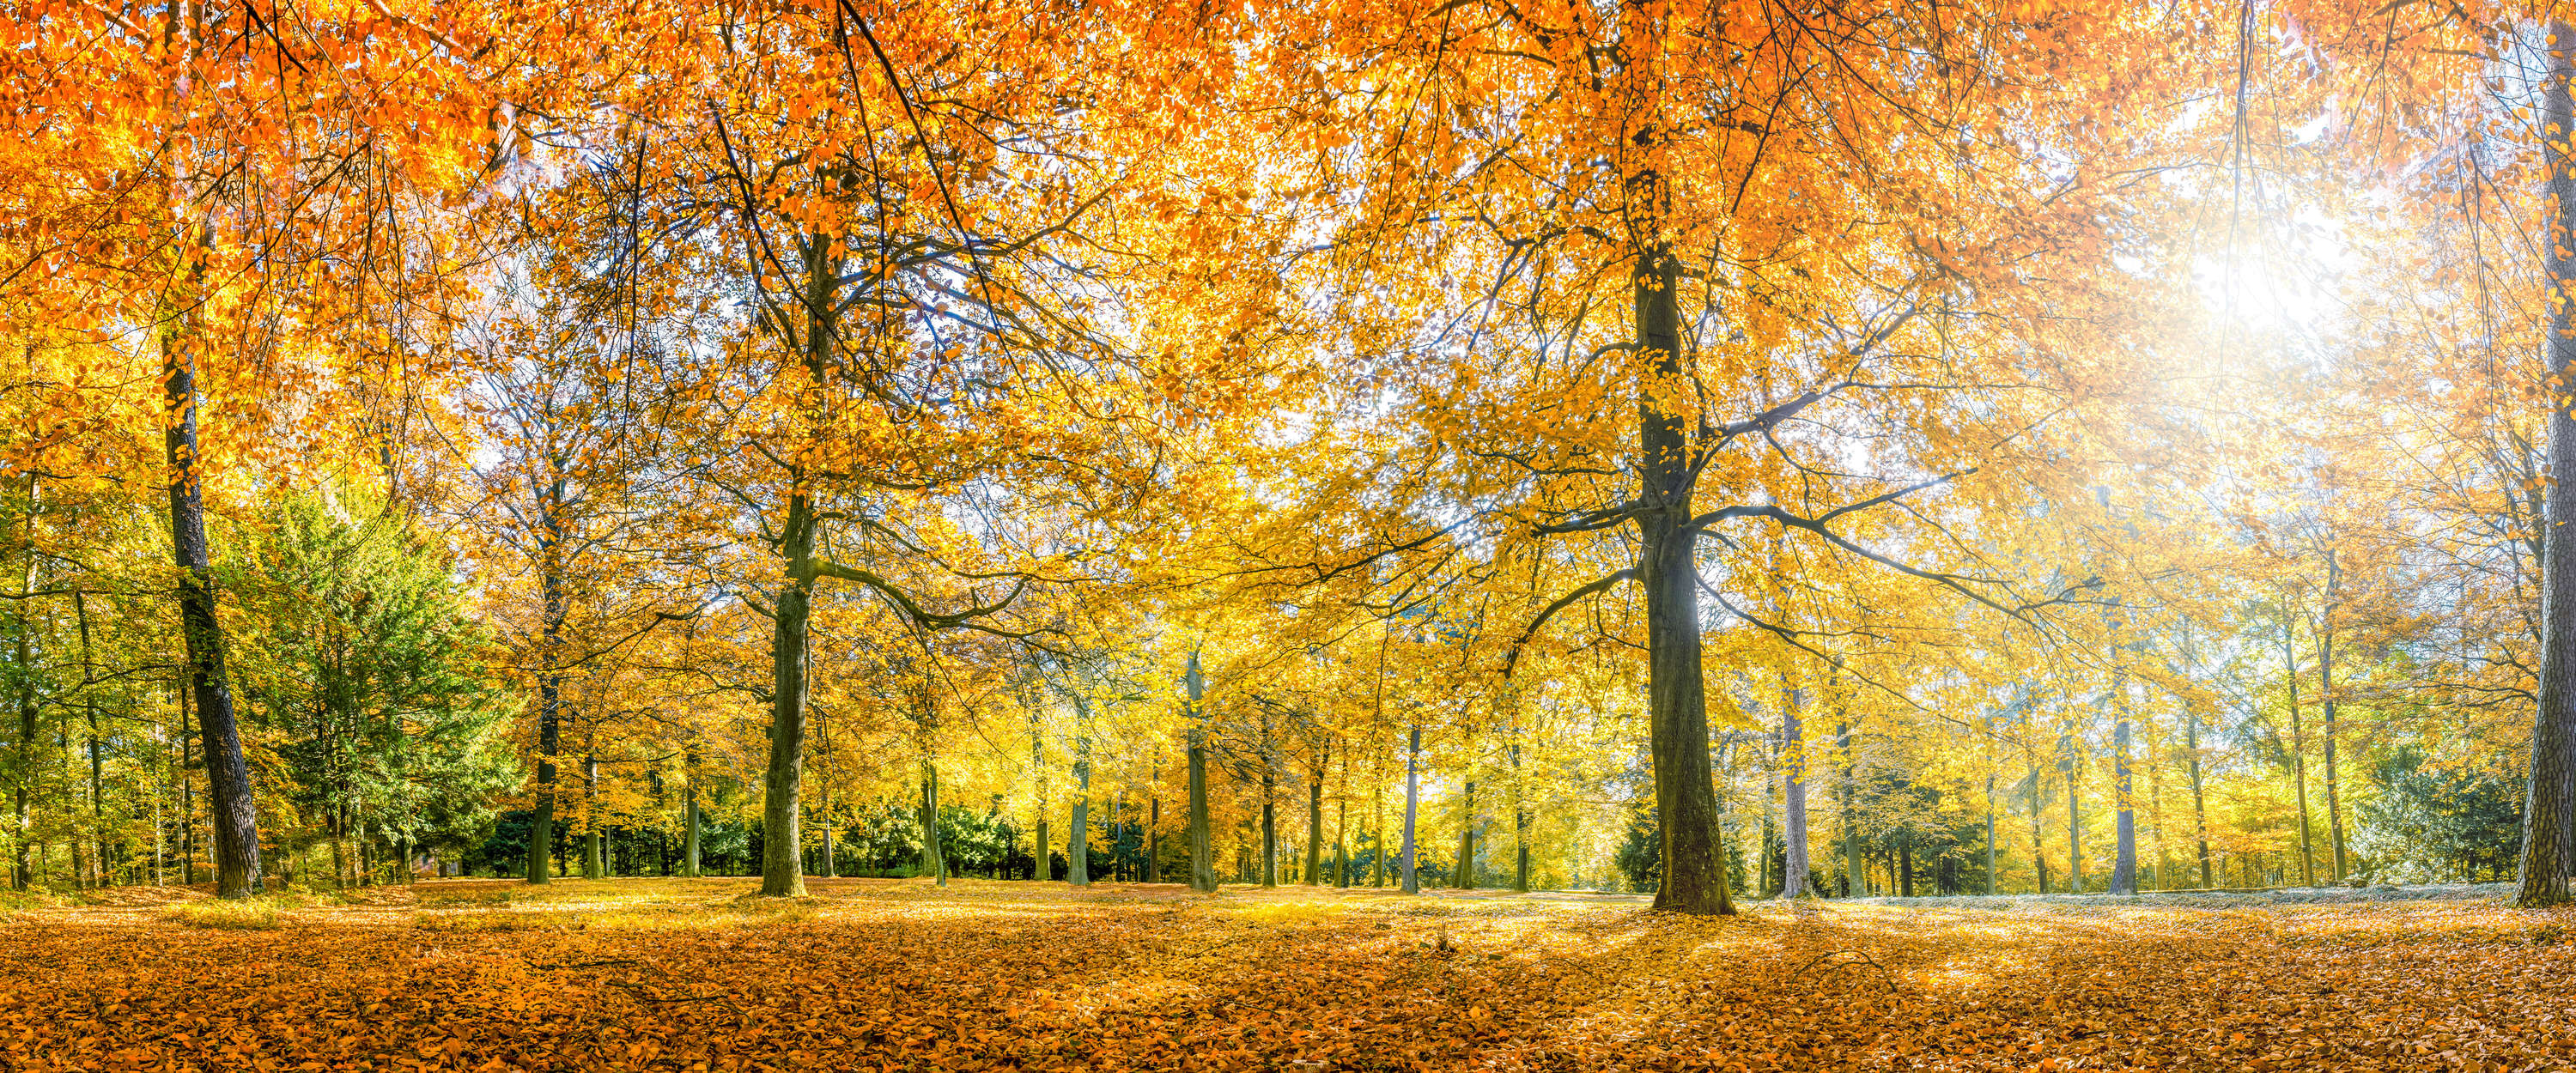             Fotomural Bosque en otoño con árboles caducifolios amarillos
        